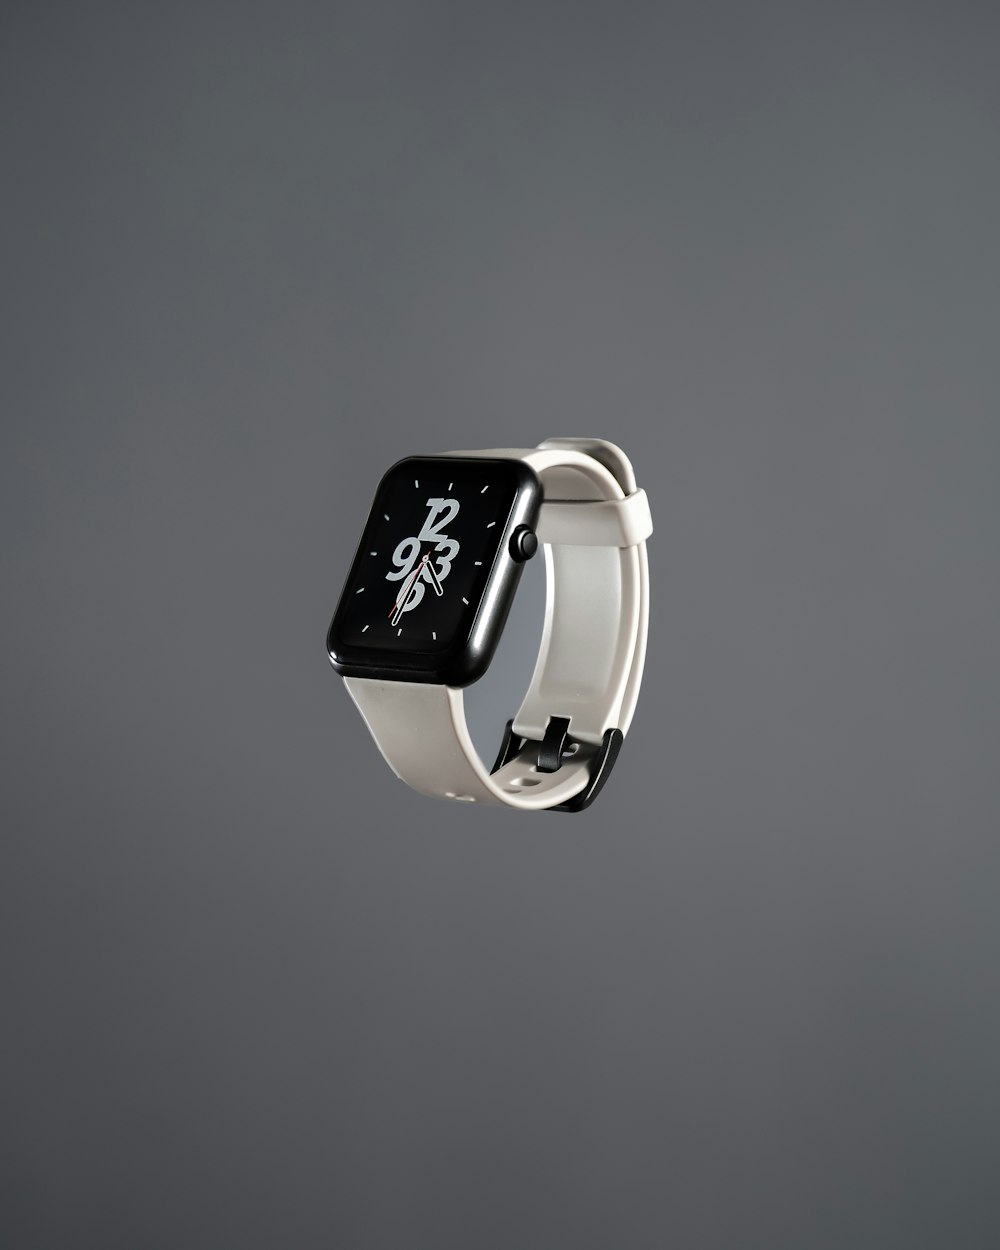 Foto Un apple watch con un reloj en blanco y negro – Imagen Gris gratis en  Unsplash